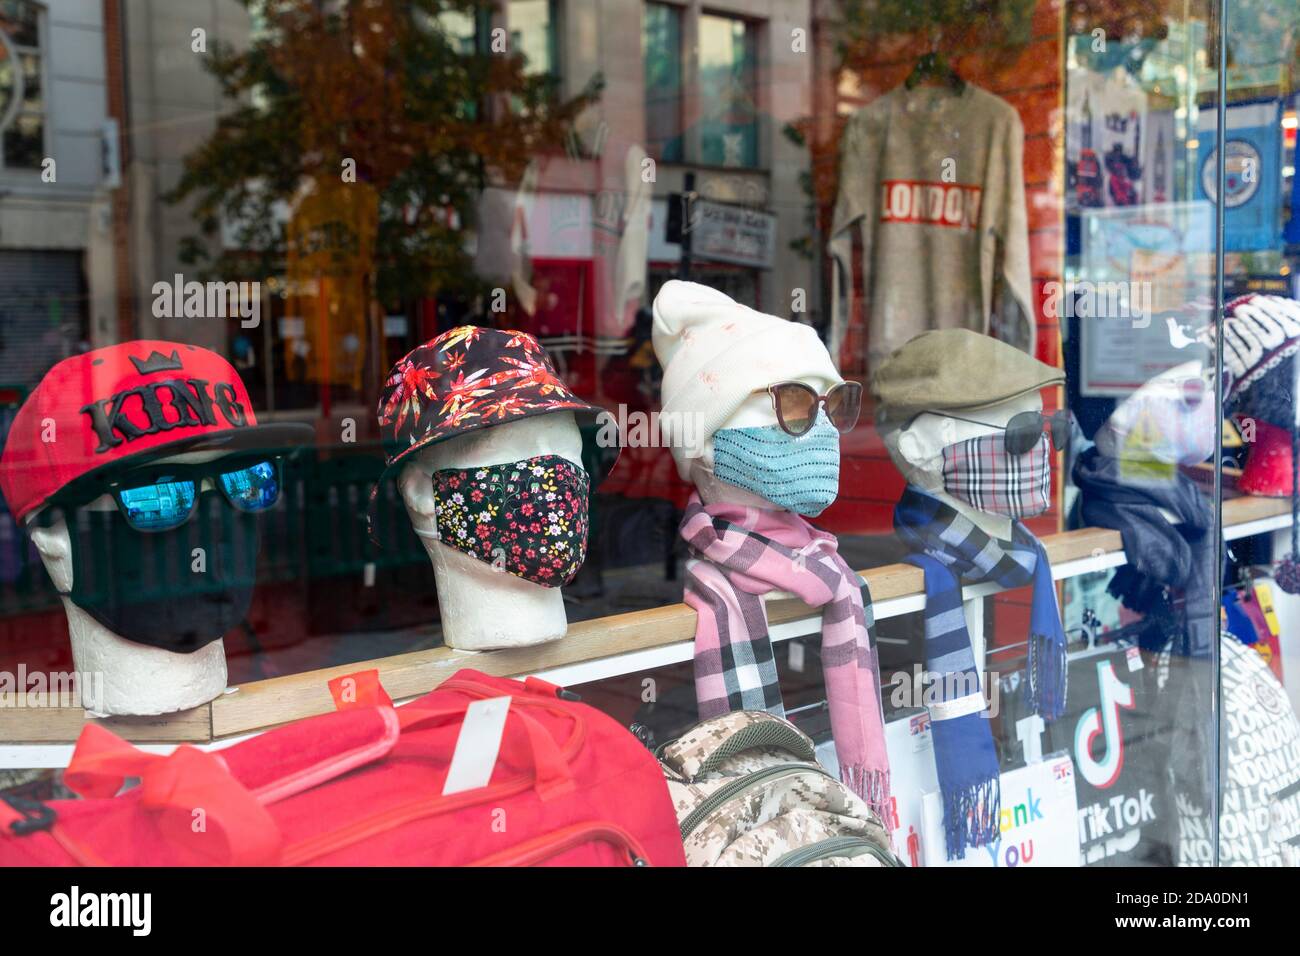 Des têtes de mannequin portant des masques dans une vitrine d'un magasin de détail, pendant le deuxième confinement national, Oxford Street, Londres, 7 novembre 2020 Banque D'Images